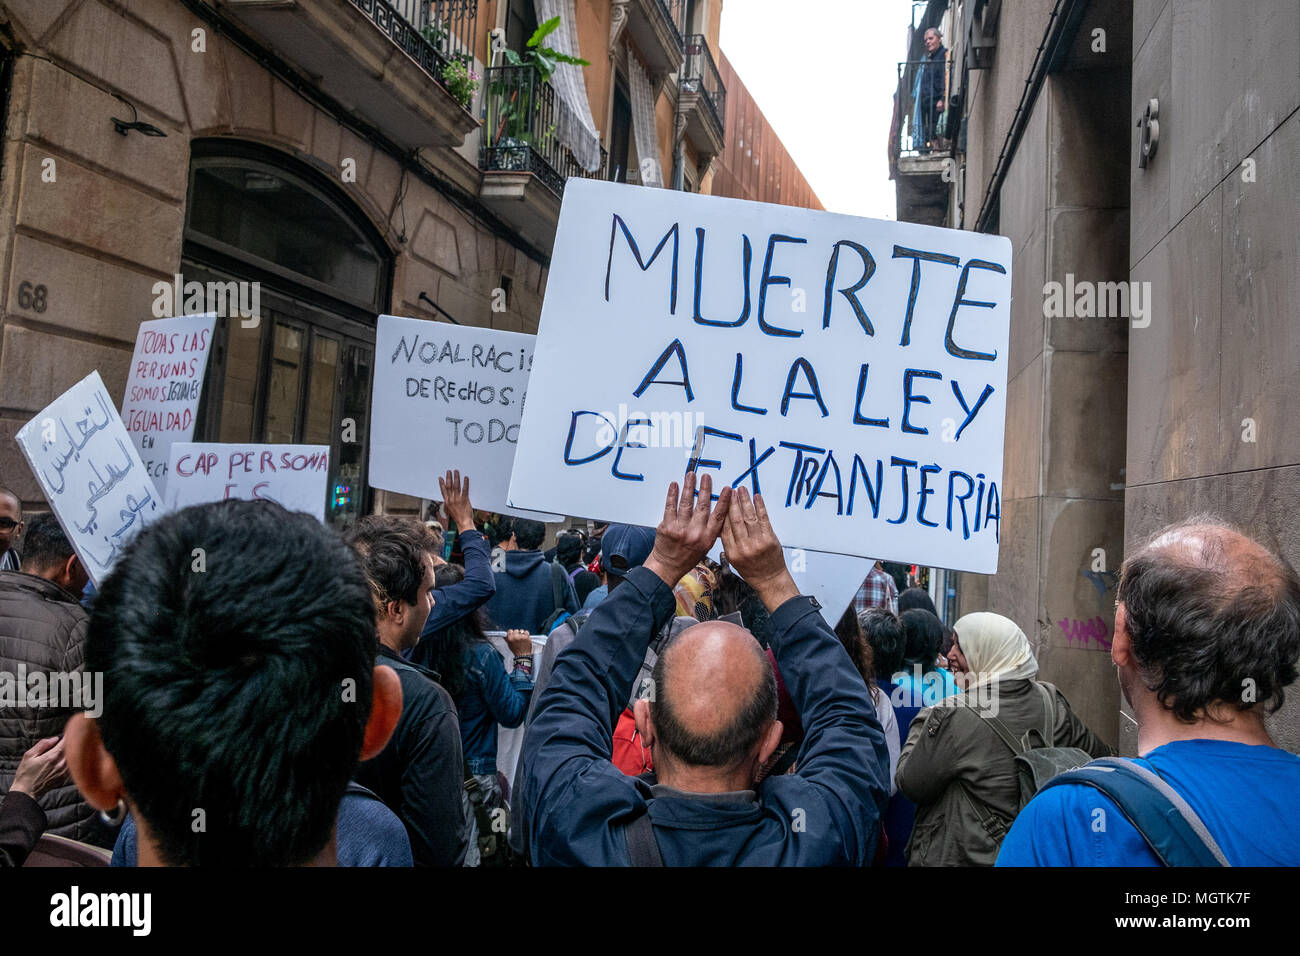 Barcelona, España. 28 abr, 2018. Varios manifestantes se ven mostrando carteles pro derechos de y refugiados en Barcelona. Durante los últimos siete decenas de inmigrantes "indocumentados" personas han sido